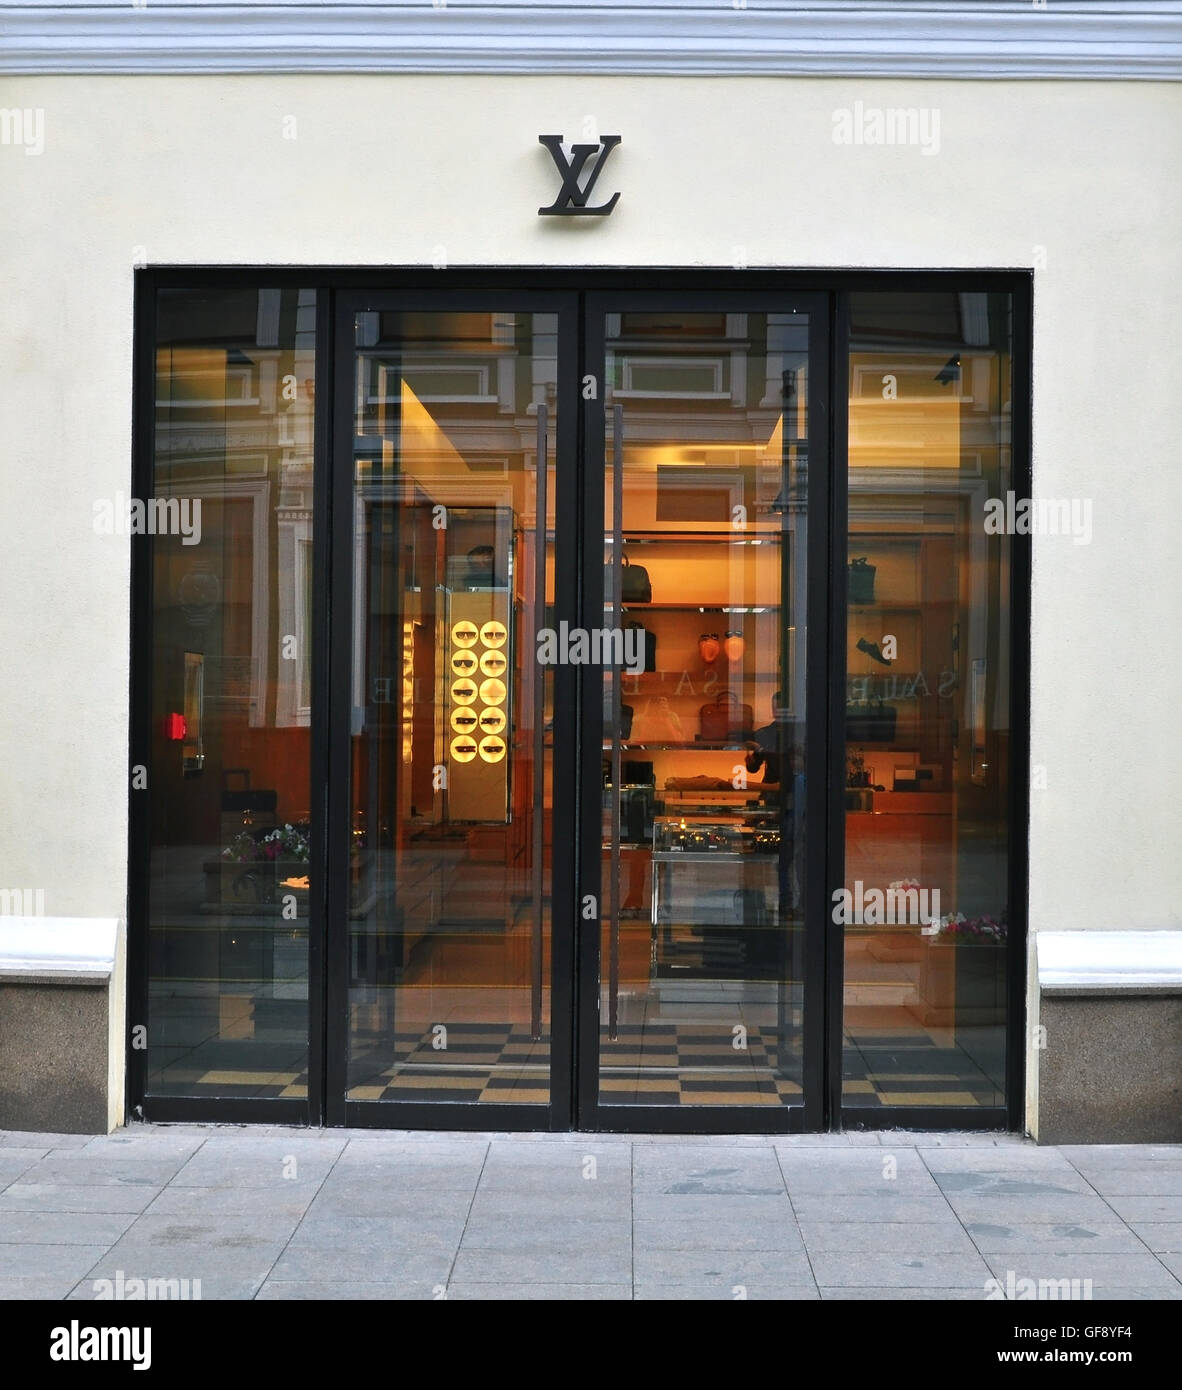 Schöner Laden Louis Vuitton, Vitrine Mit Kleidung. Moskau. 01.11